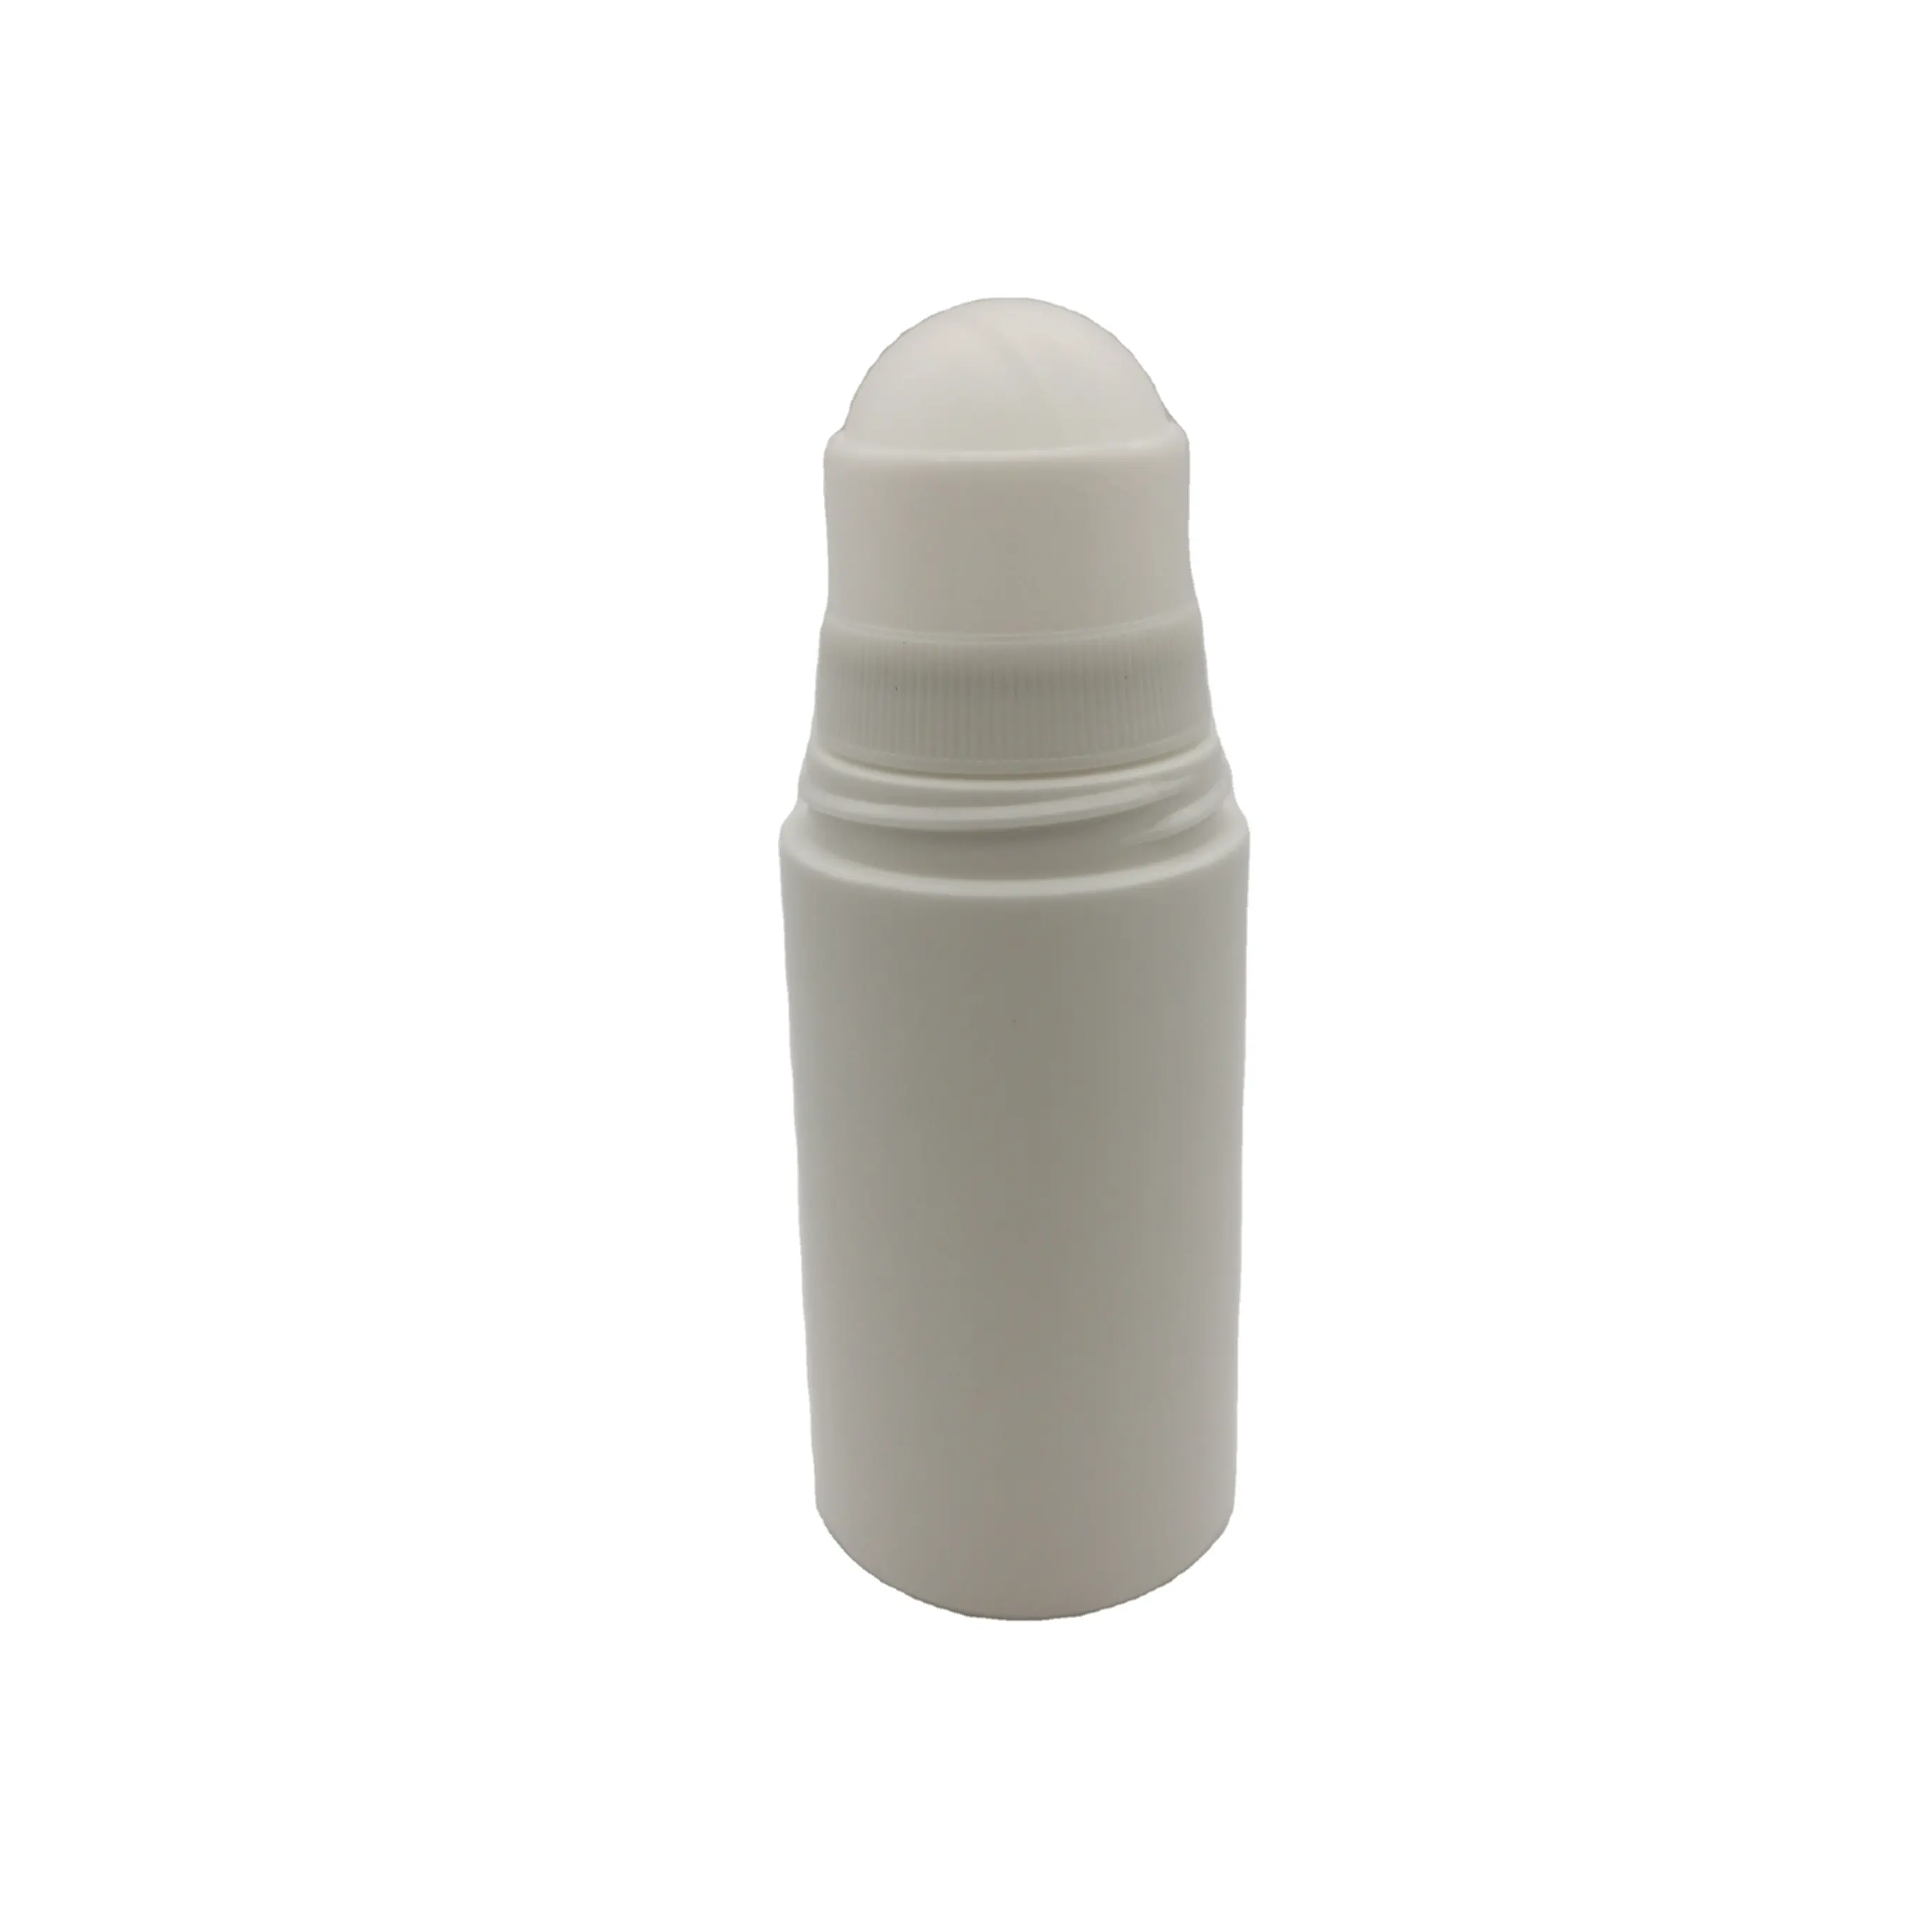 2 unzen roller ball Deodorant parfüm kunststoff flasche ätherisches öl schwamm rolle auf applikator flasche